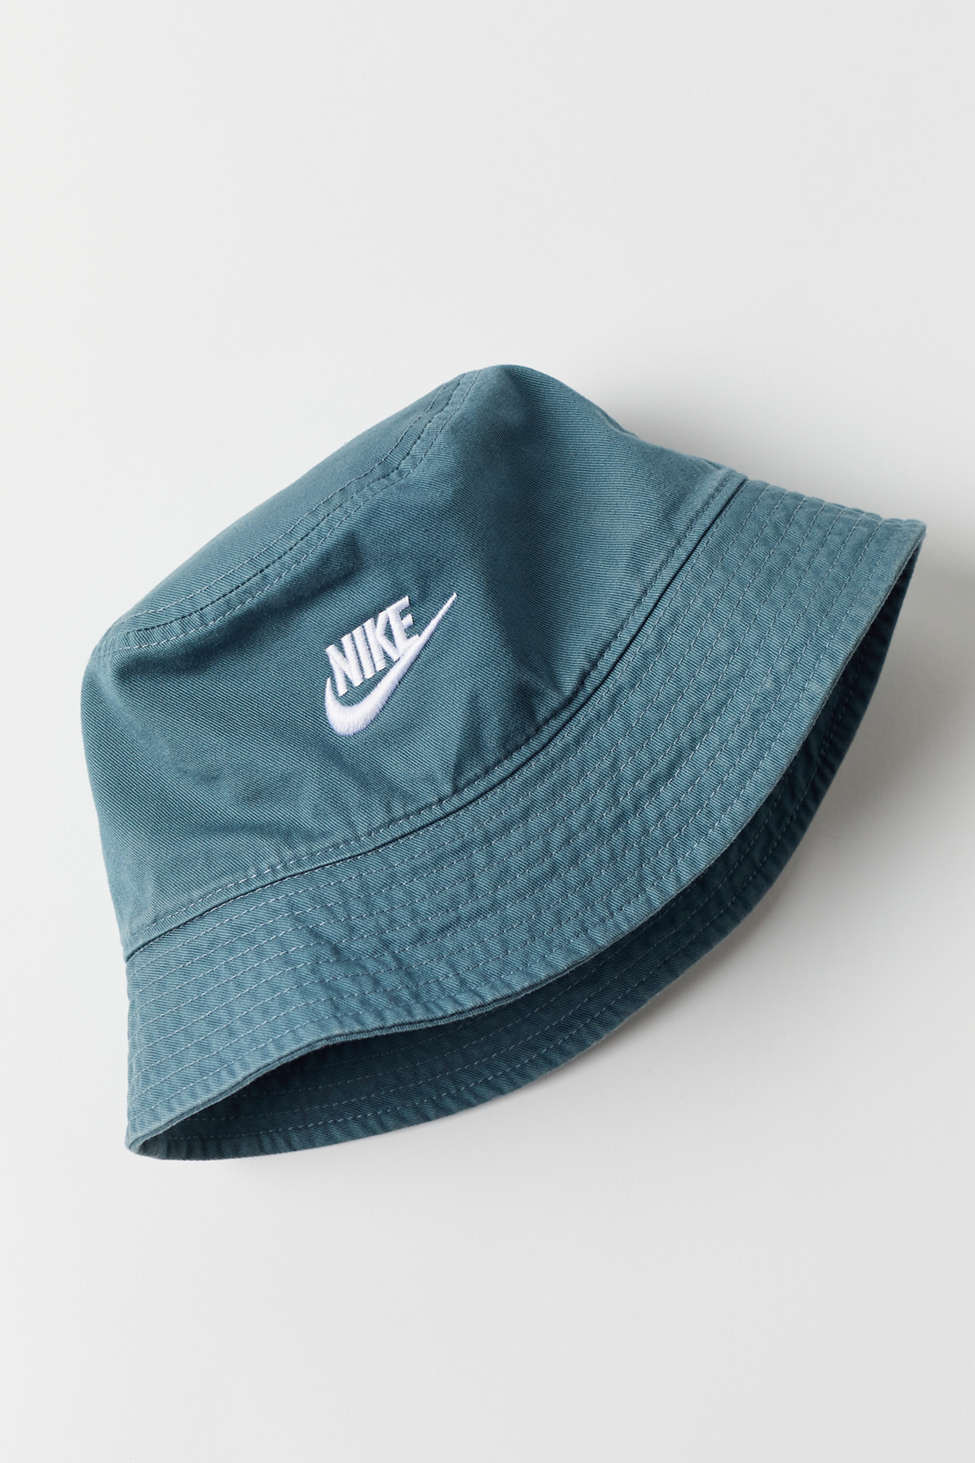 Nike Sportswear Futura Bucket Hat